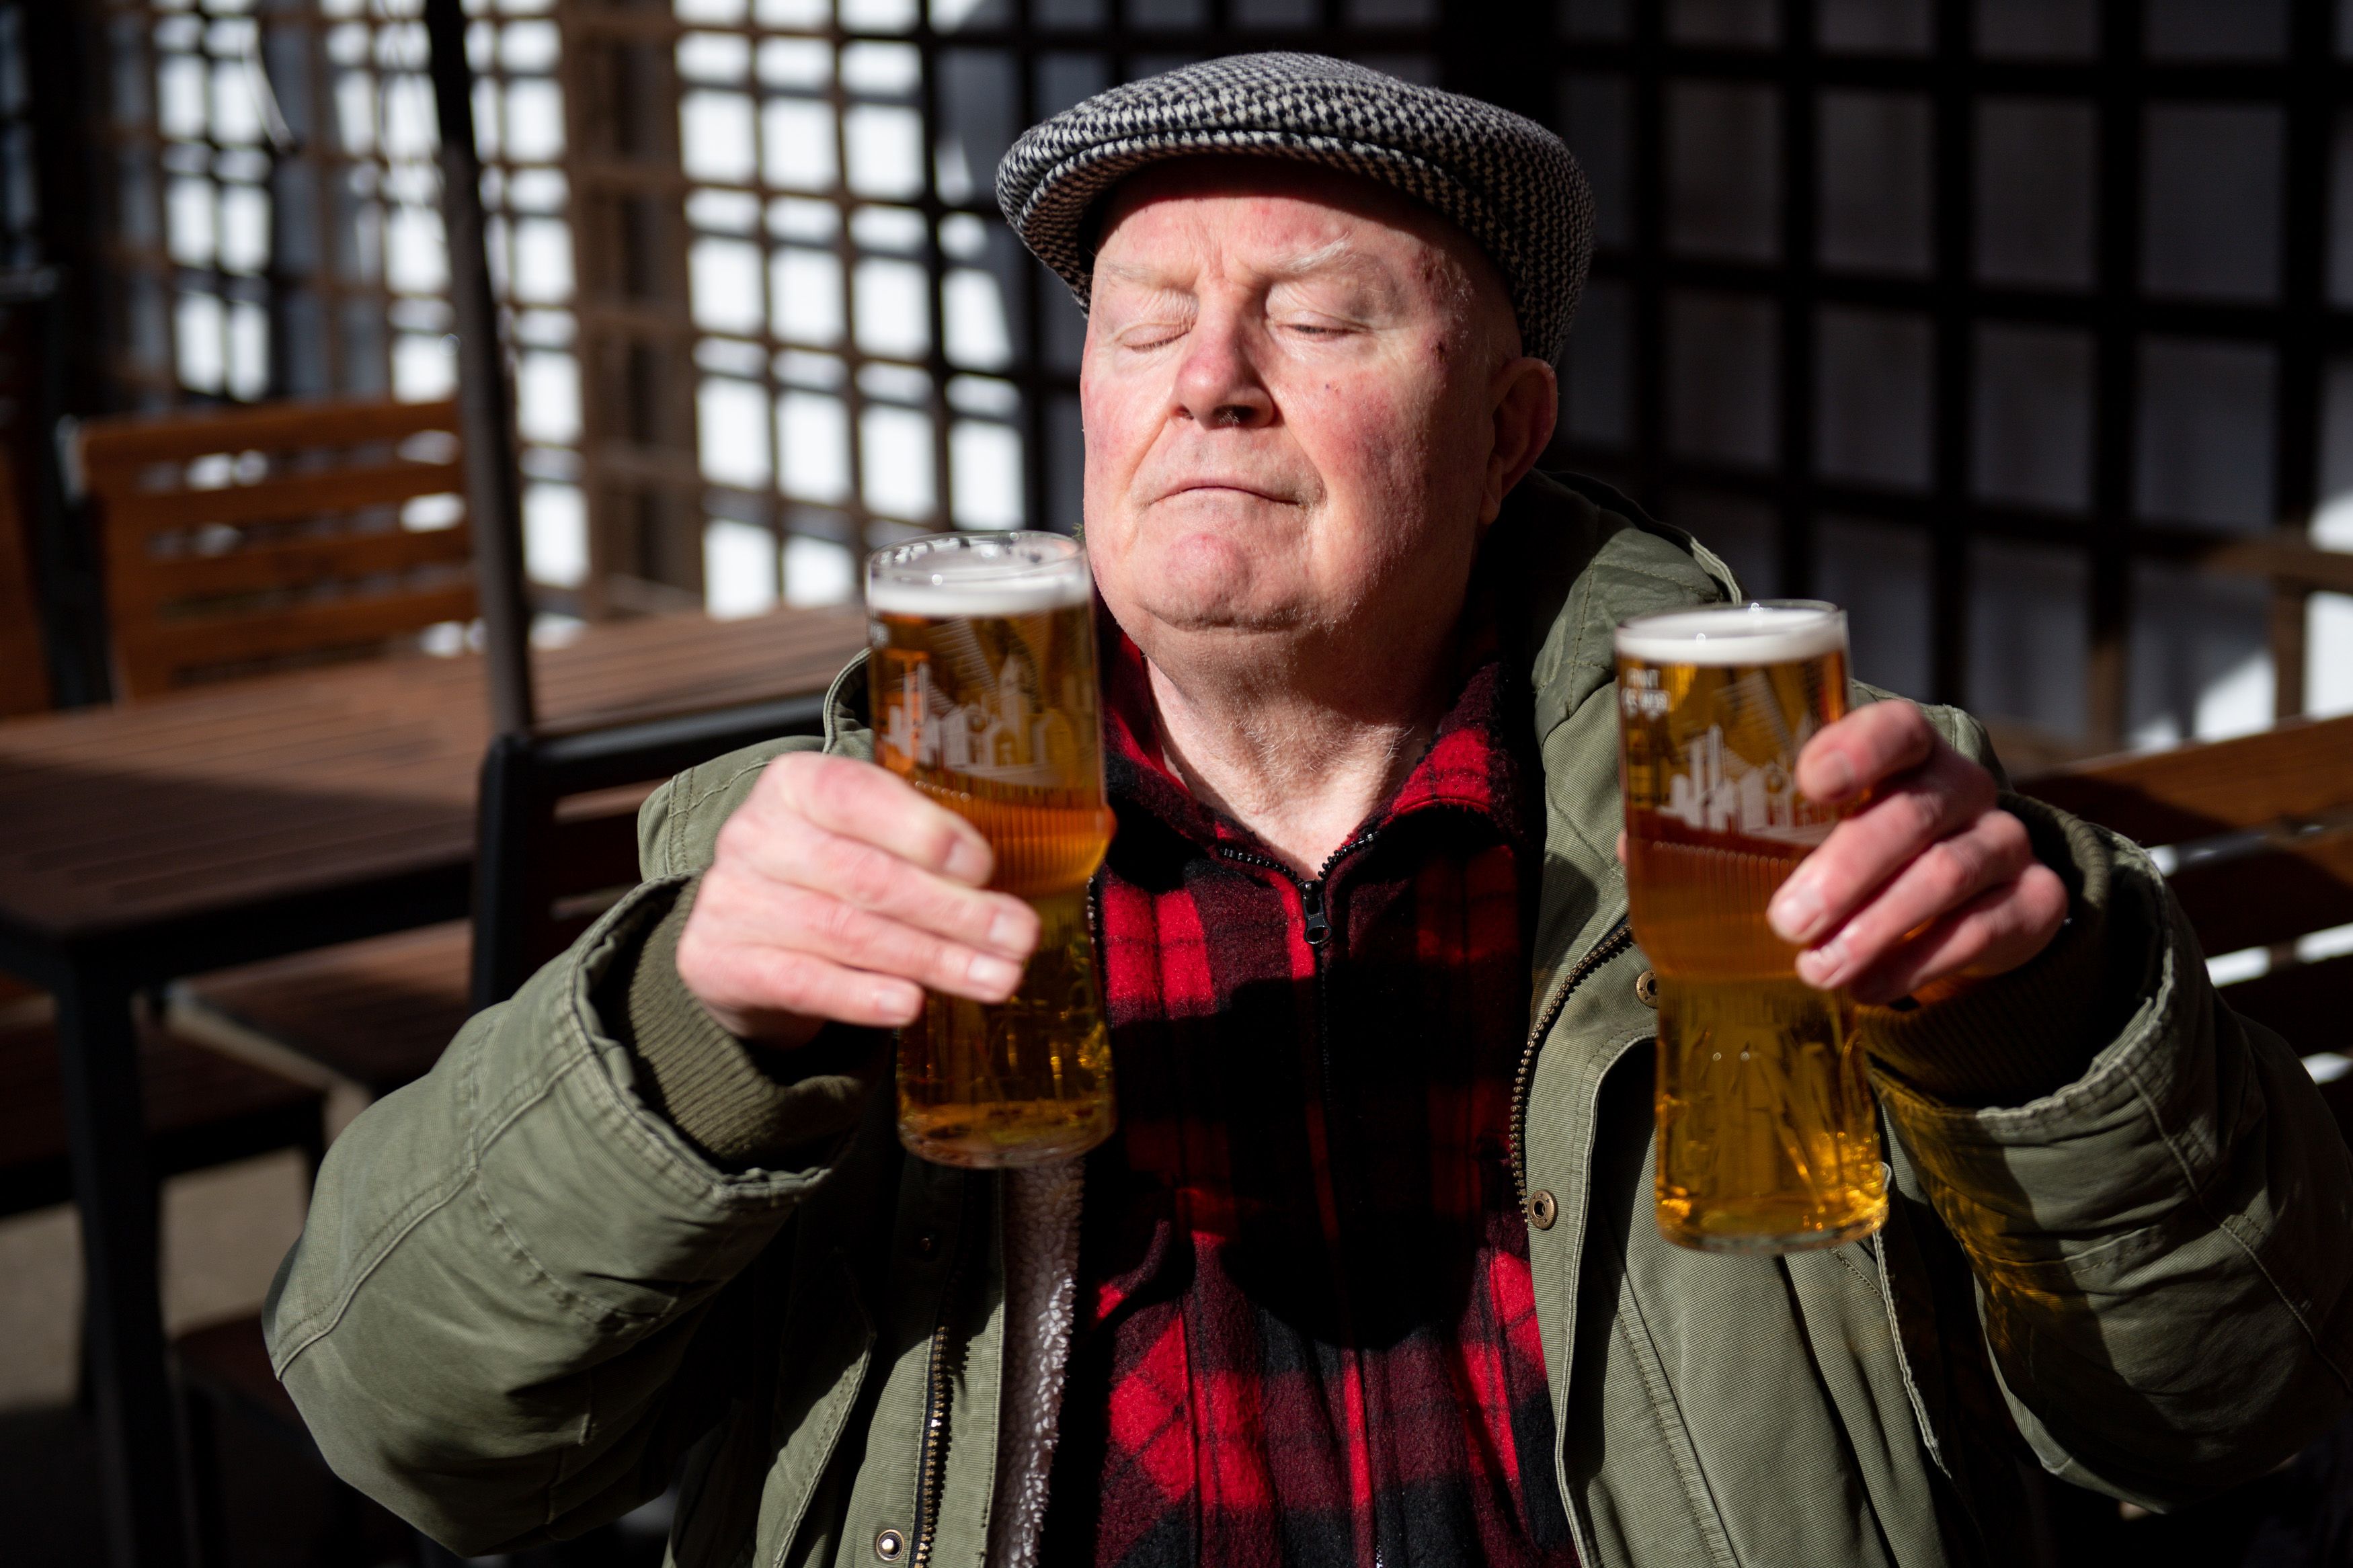 Man enjoying two beers